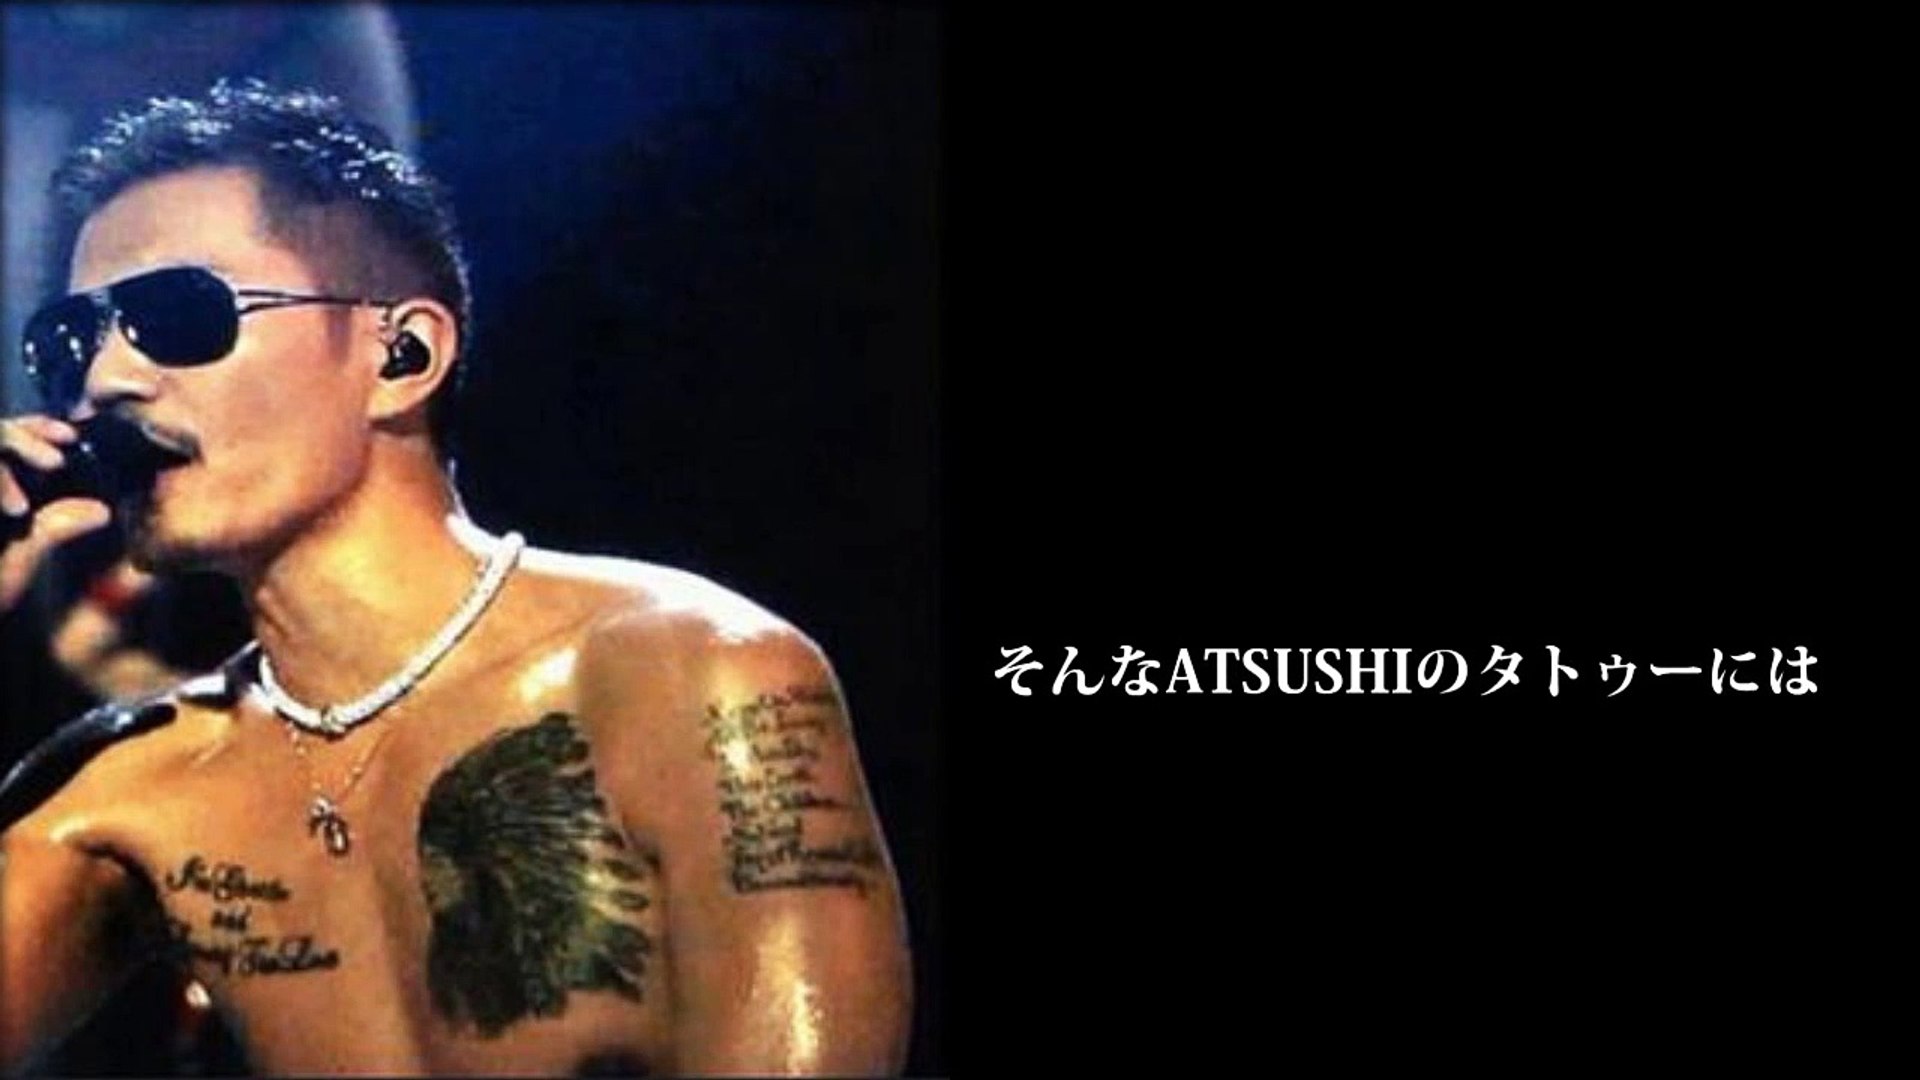 芸能人 タトゥー Exile Atsushiのタトゥーの意味 入れた理由がかっこよすぎる Video Dailymotion